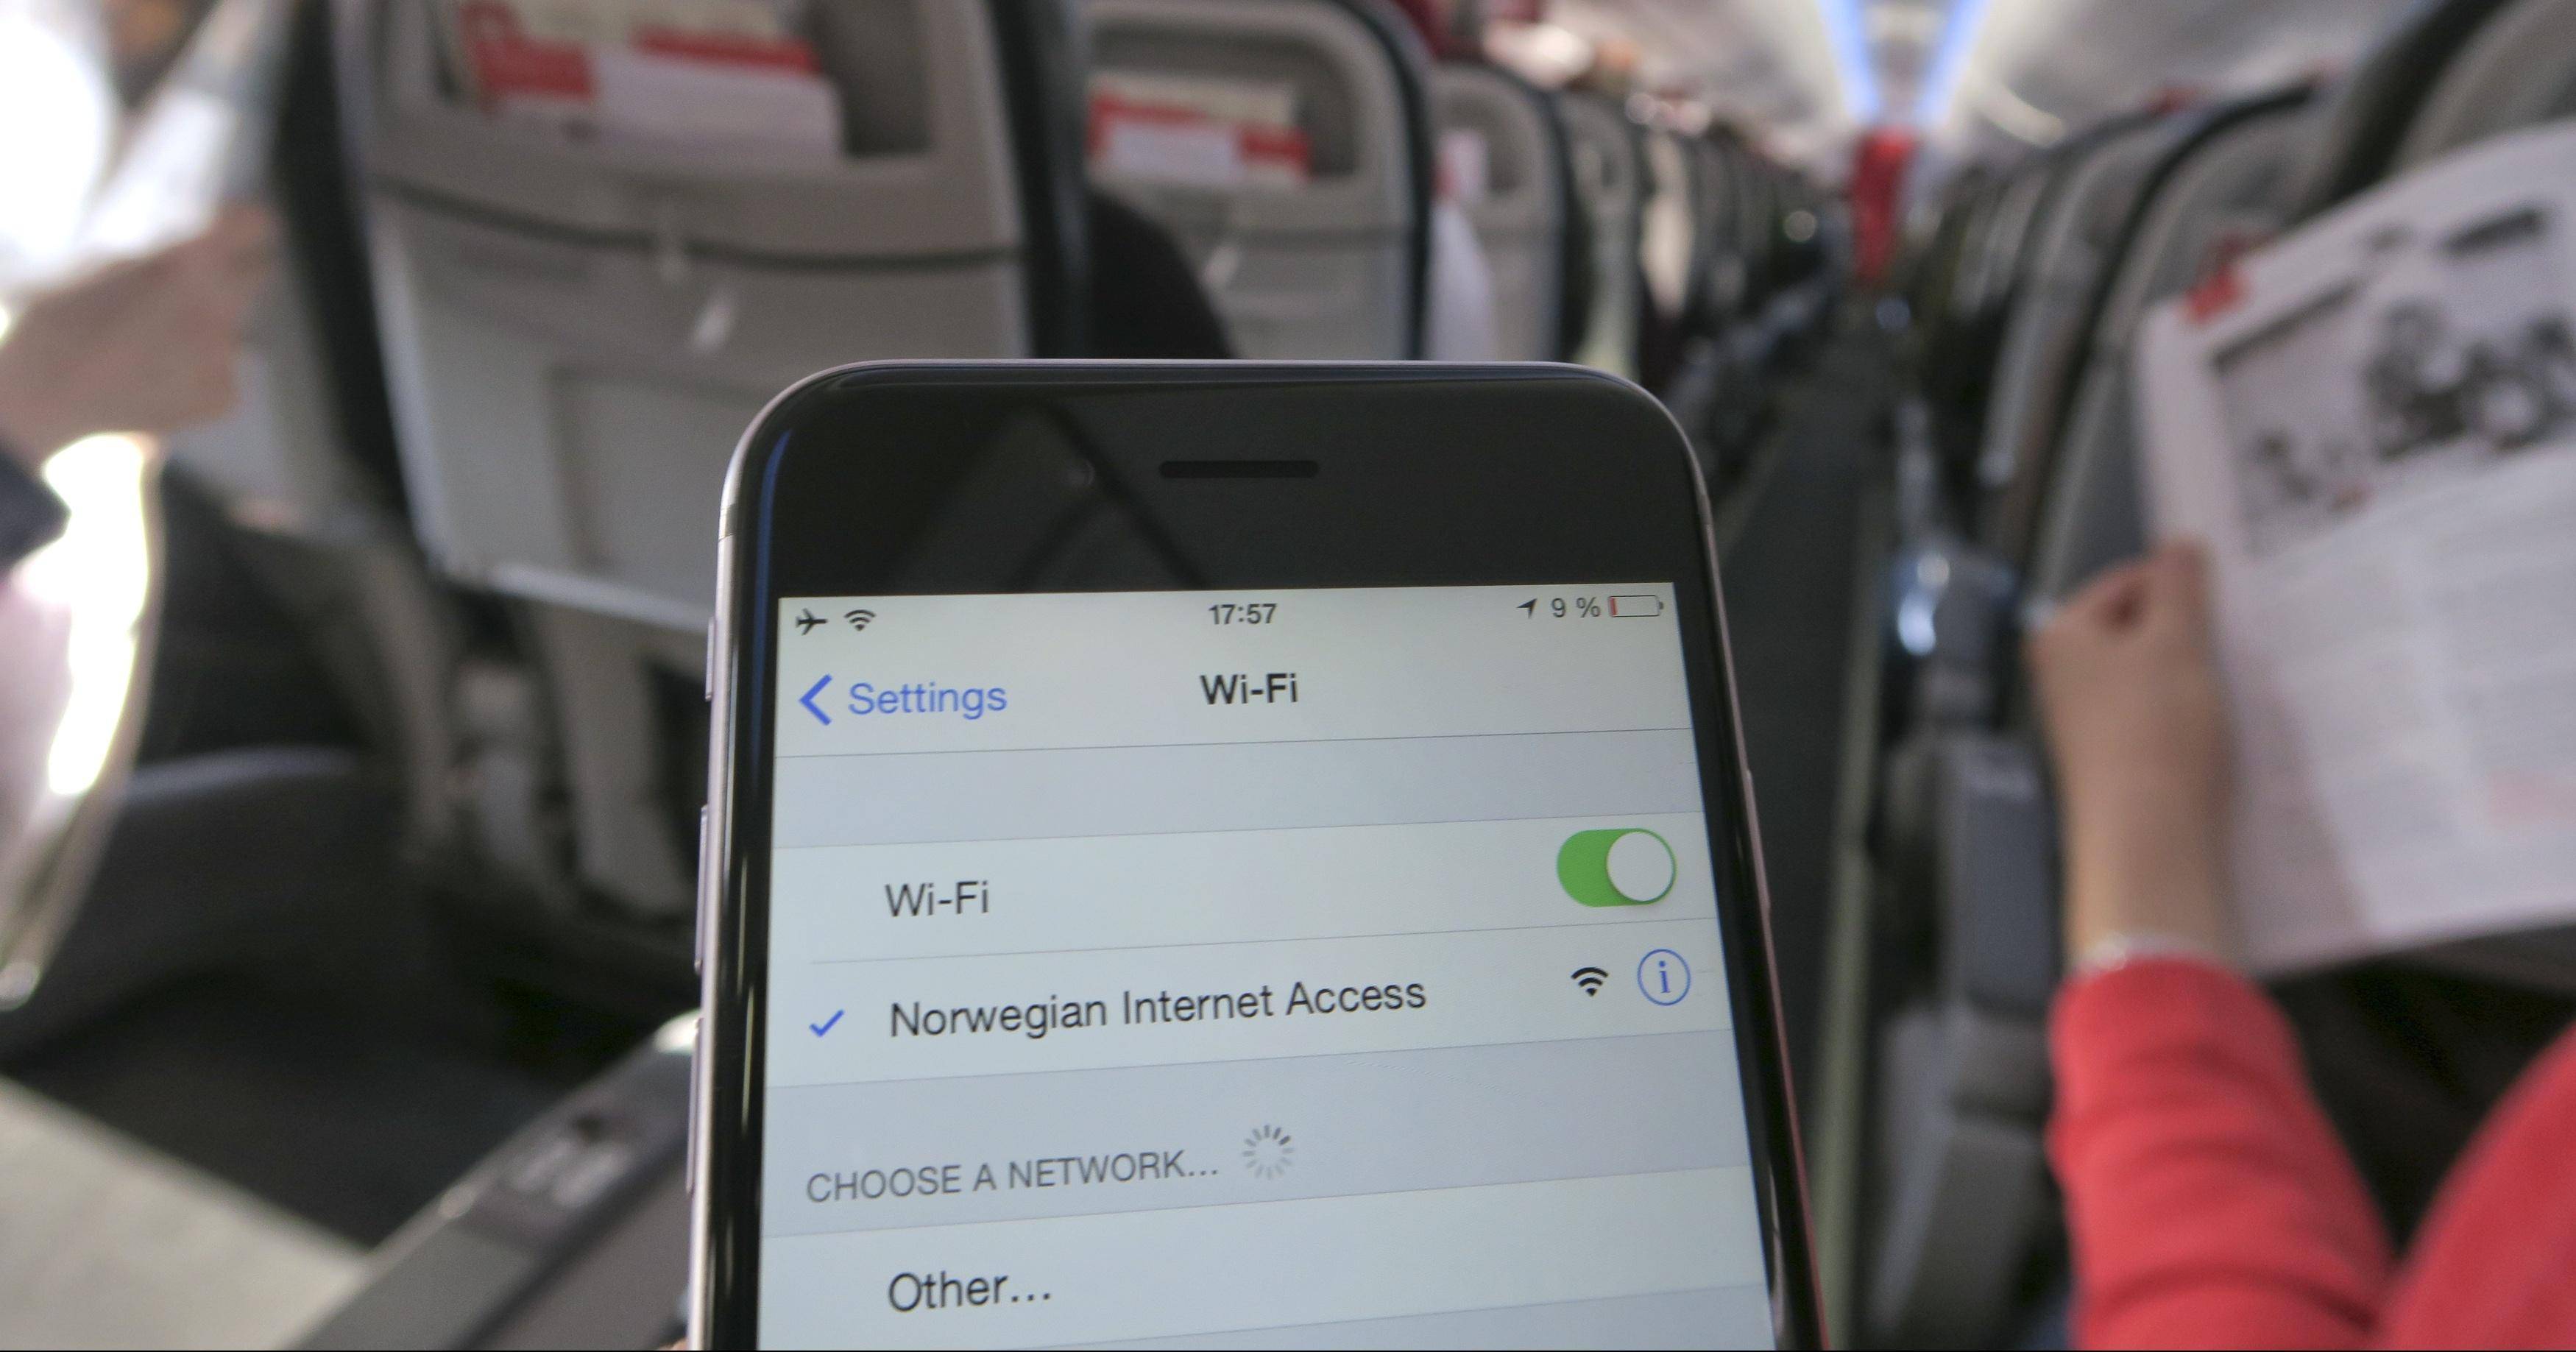 Можно ли пользоваться мобильным телефоном в самолете